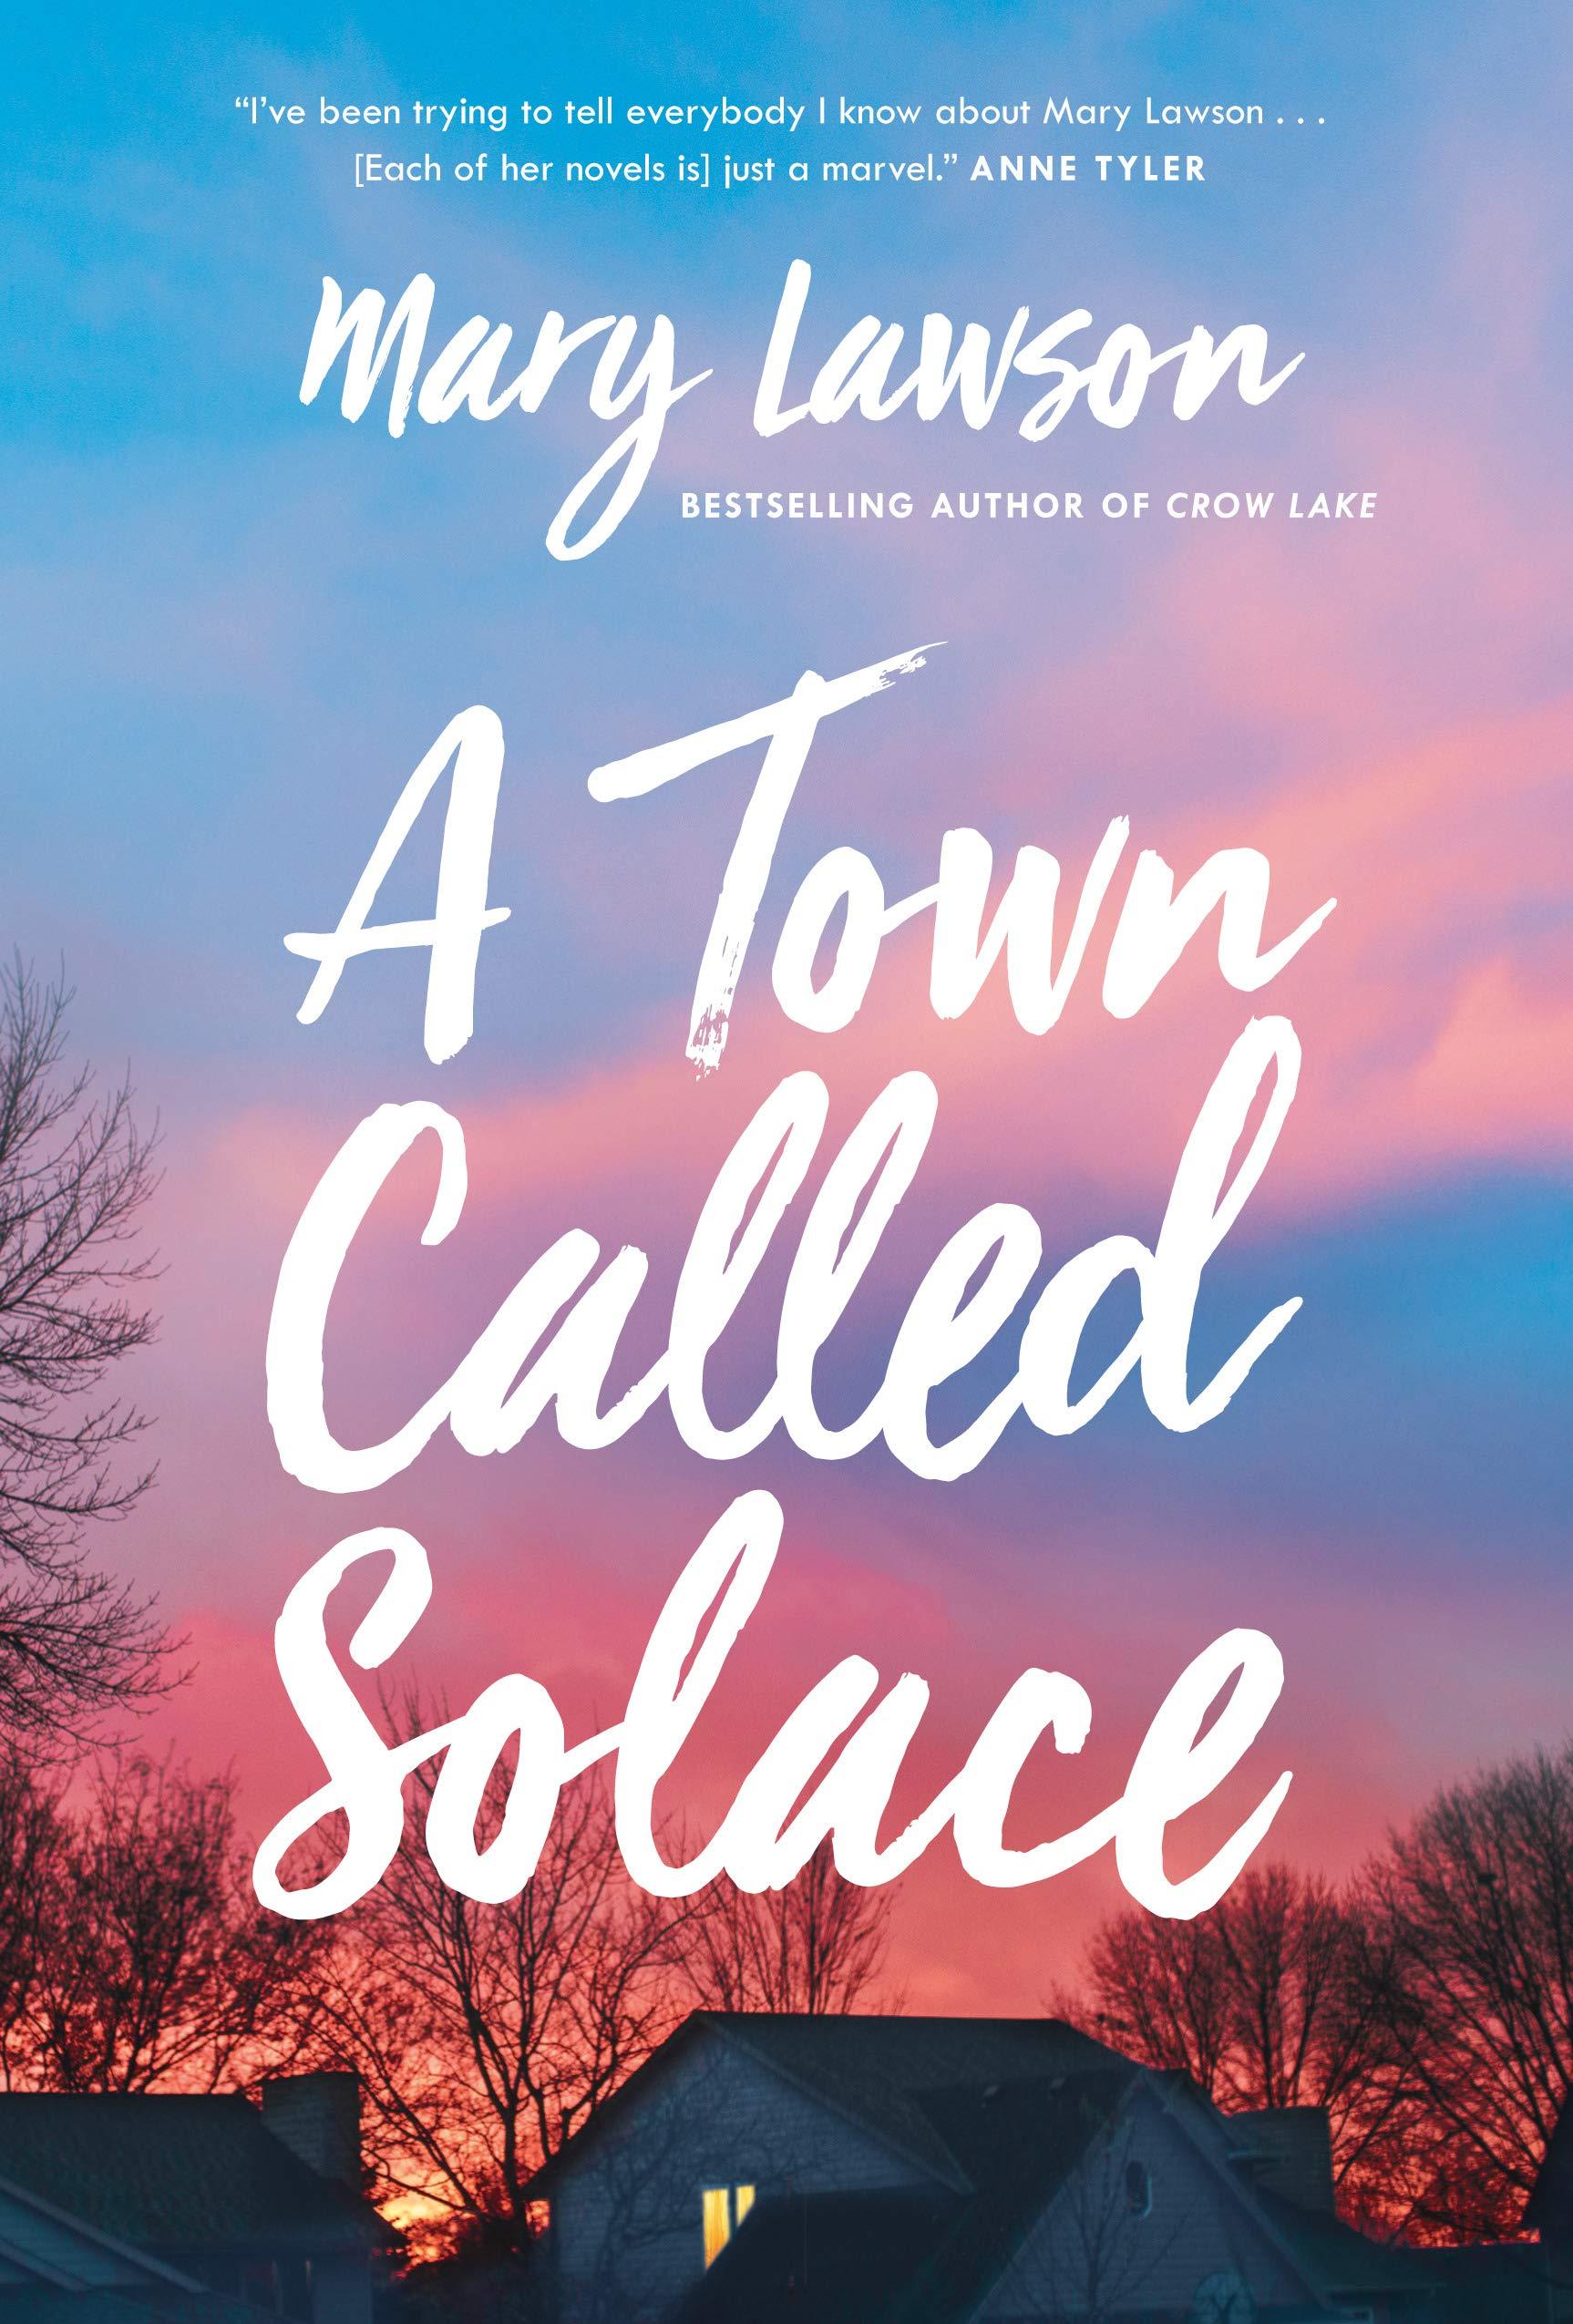 القائمة الطويلة للبوكر 2021 - Mary Lawson - A Town Called Solace